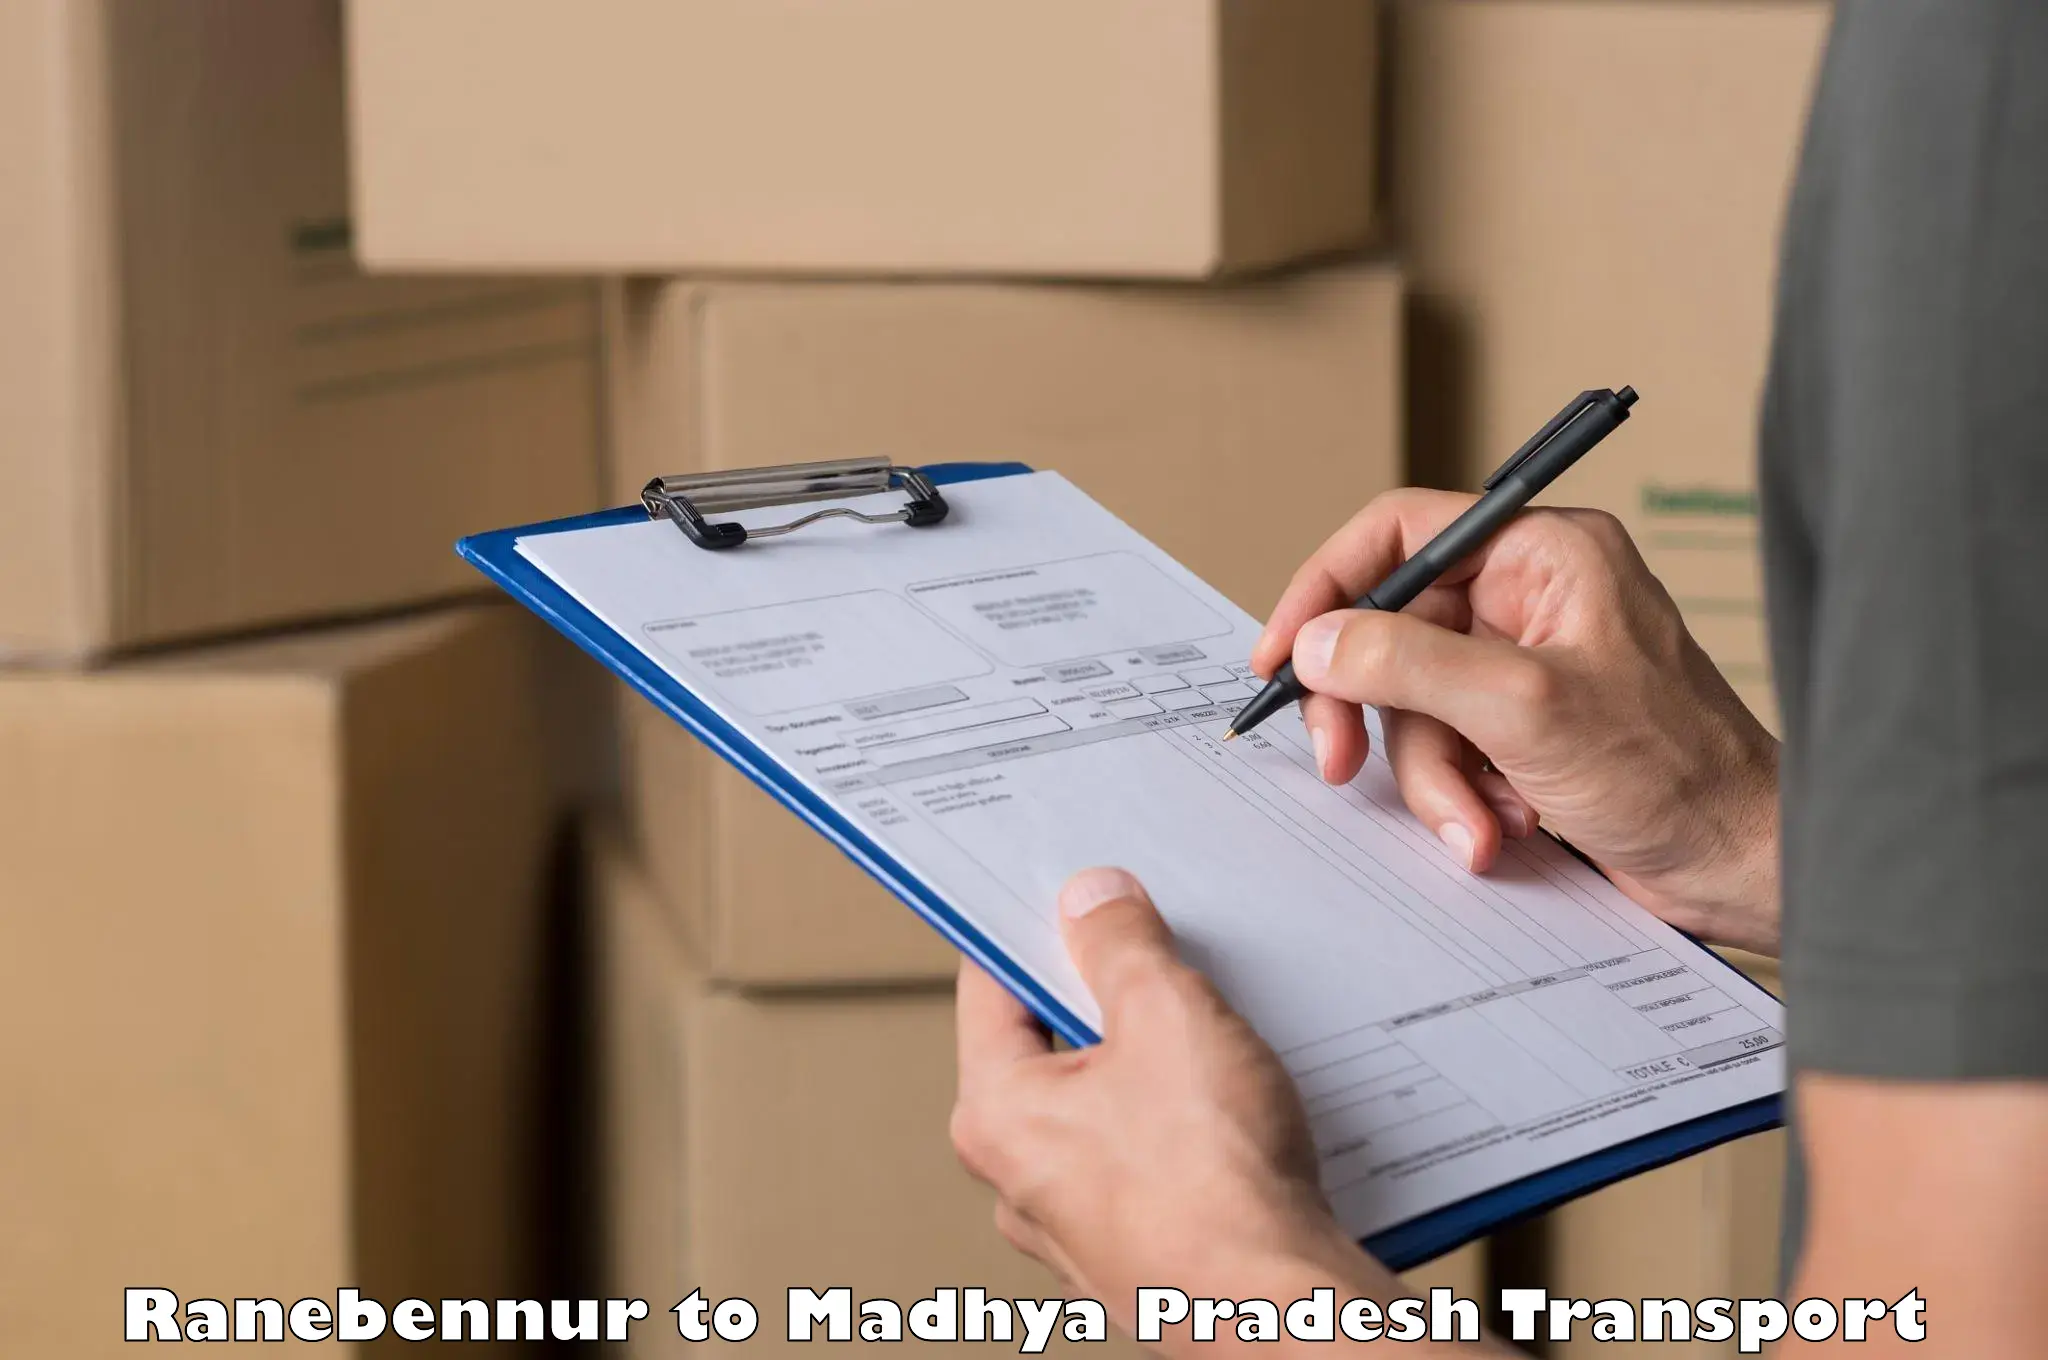 Interstate transport services Ranebennur to Madhya Pradesh